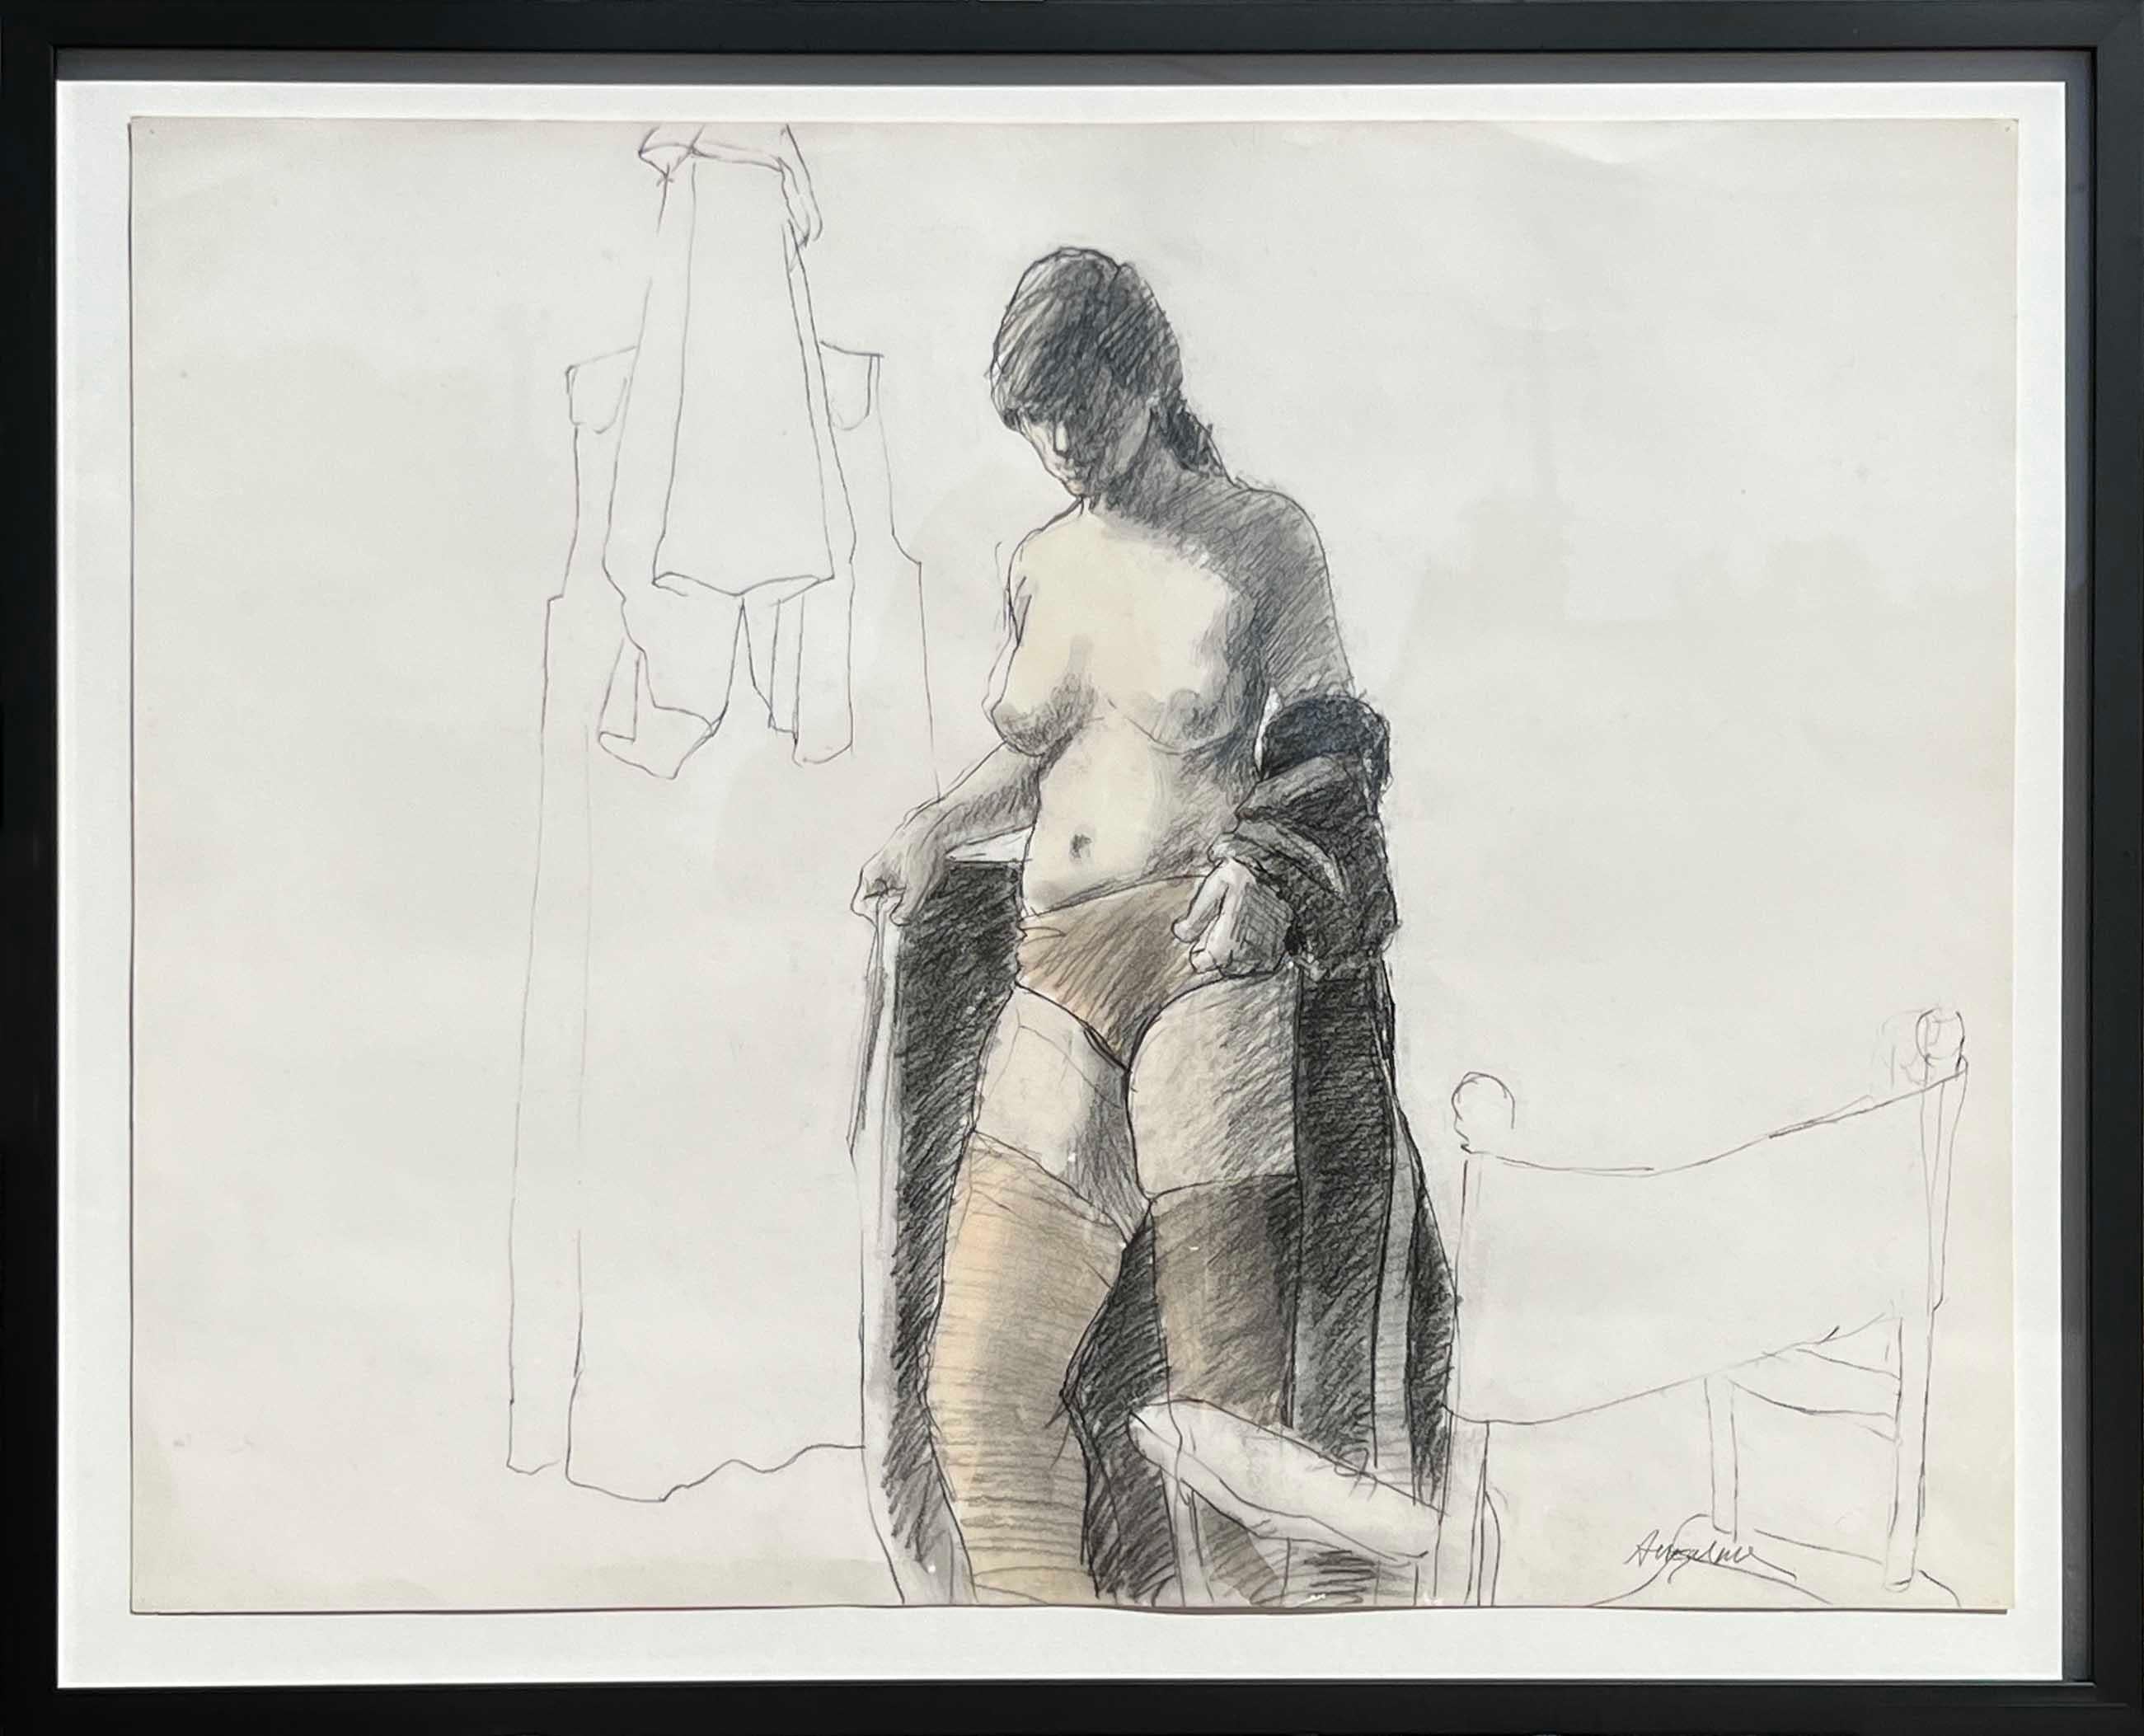 William Anzalone Abstract Drawing – Abstrakte figurative Mixed-Media-Zeichnung eines weiblichen Aktes in Schwarz und Weiß